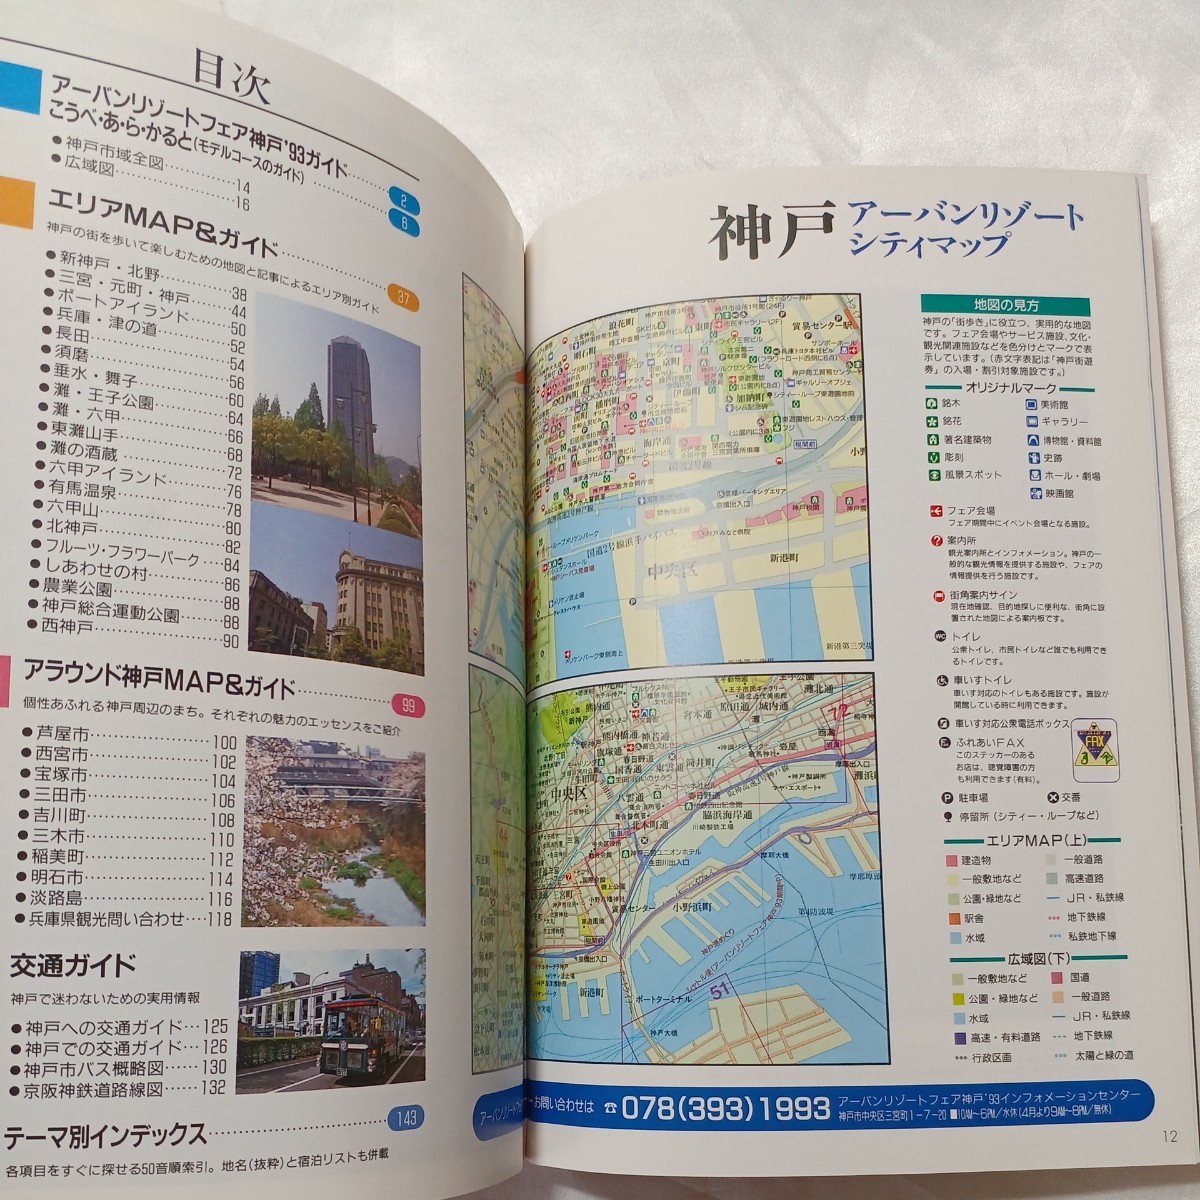 zaa-466♪神戸・アーバンリゾートシティマップ(オフィシャルガイド)アーバンリゾートフェア神戸'93　1993年4月15日　ぴあ_画像2